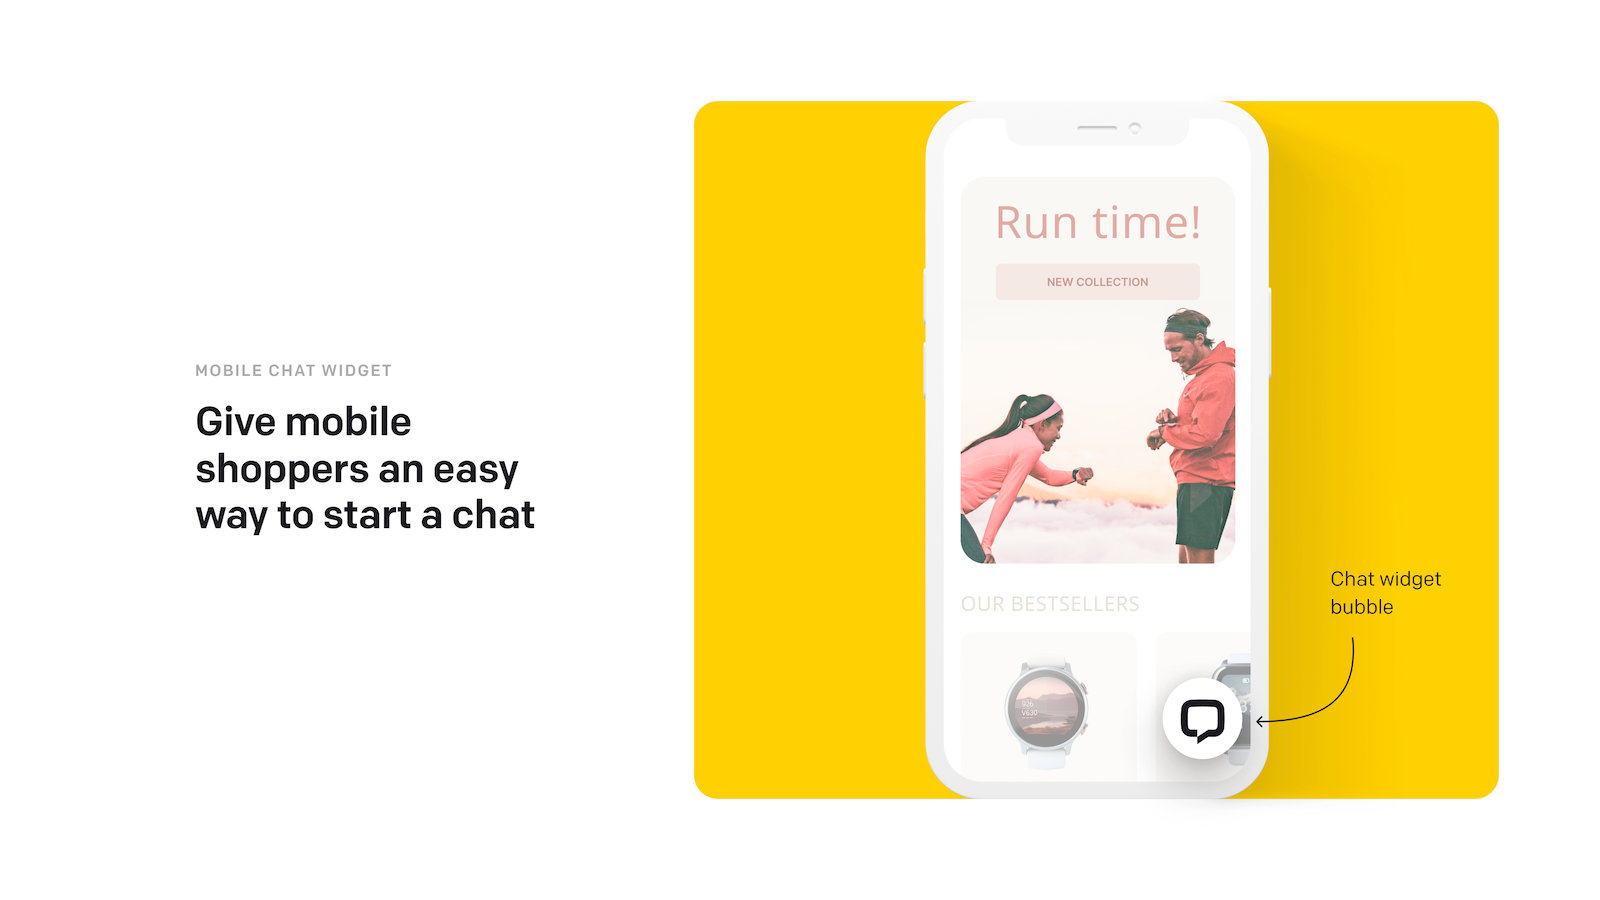 Una burbuja de widget de chat que los compradores móviles pueden usar para iniciar un chat.